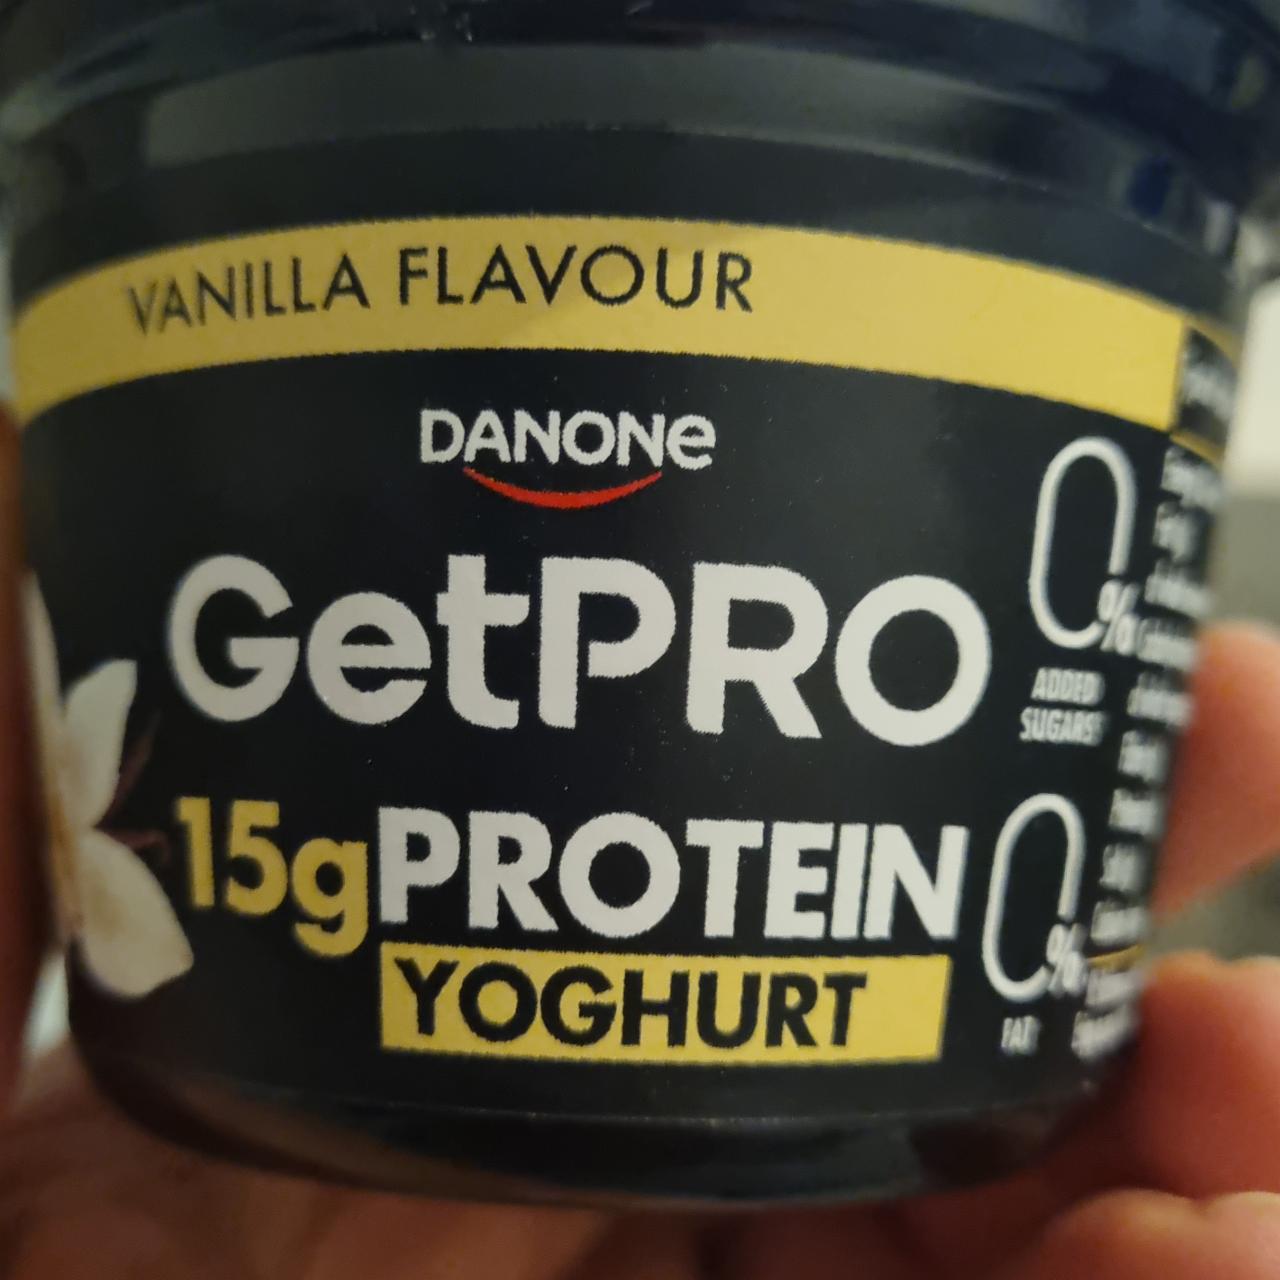 Fotografie - GetPro 15g Protein Yoghurt Vanilla Flavour Danone